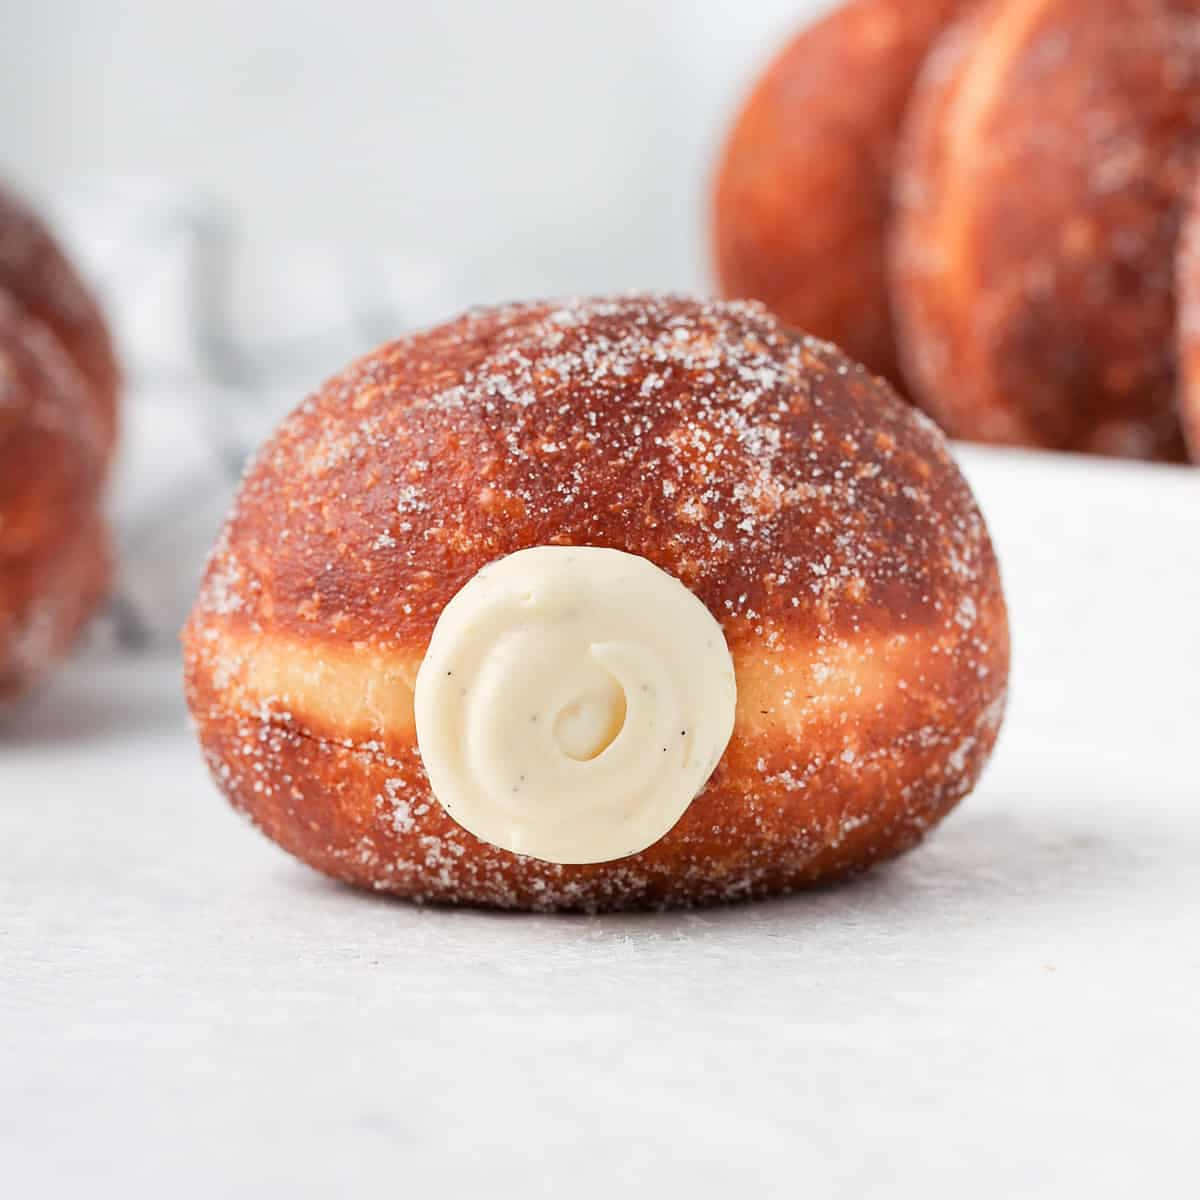 Tentadoresy Deliciosos Donuts: ¡haz De Cada Día Una Delicia!